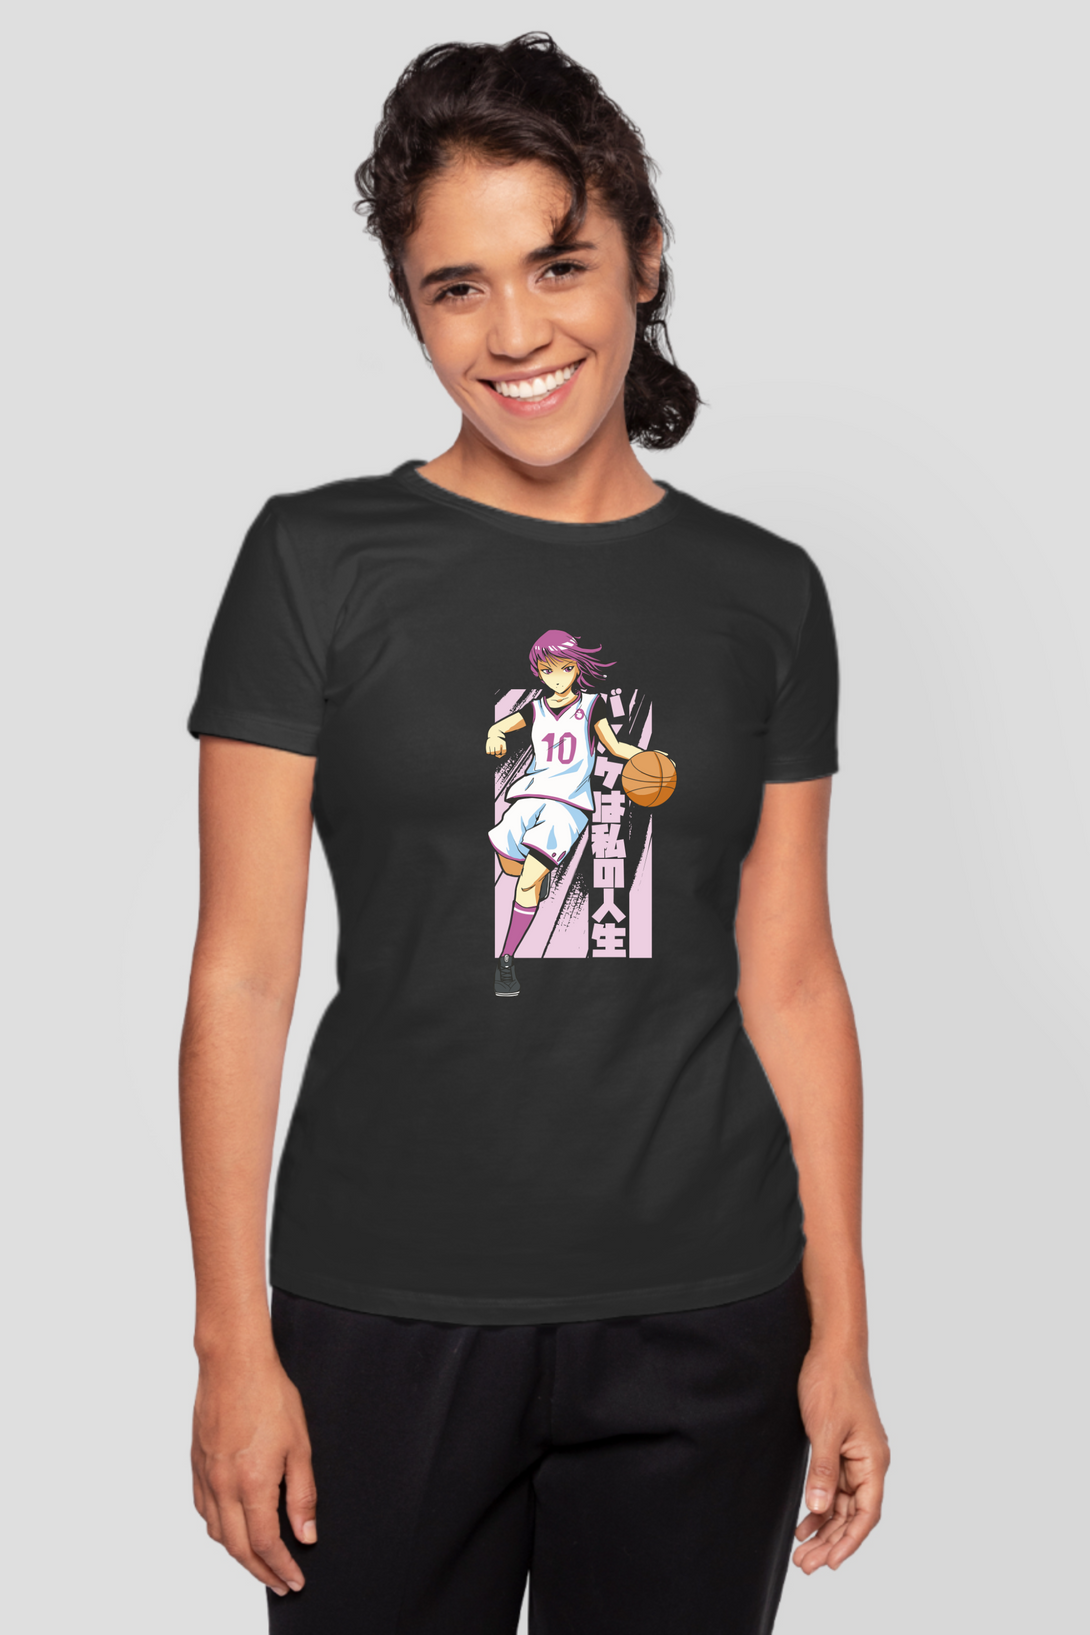 Anime Basketball Printed T-Shirt For Women - WowWaves - 8